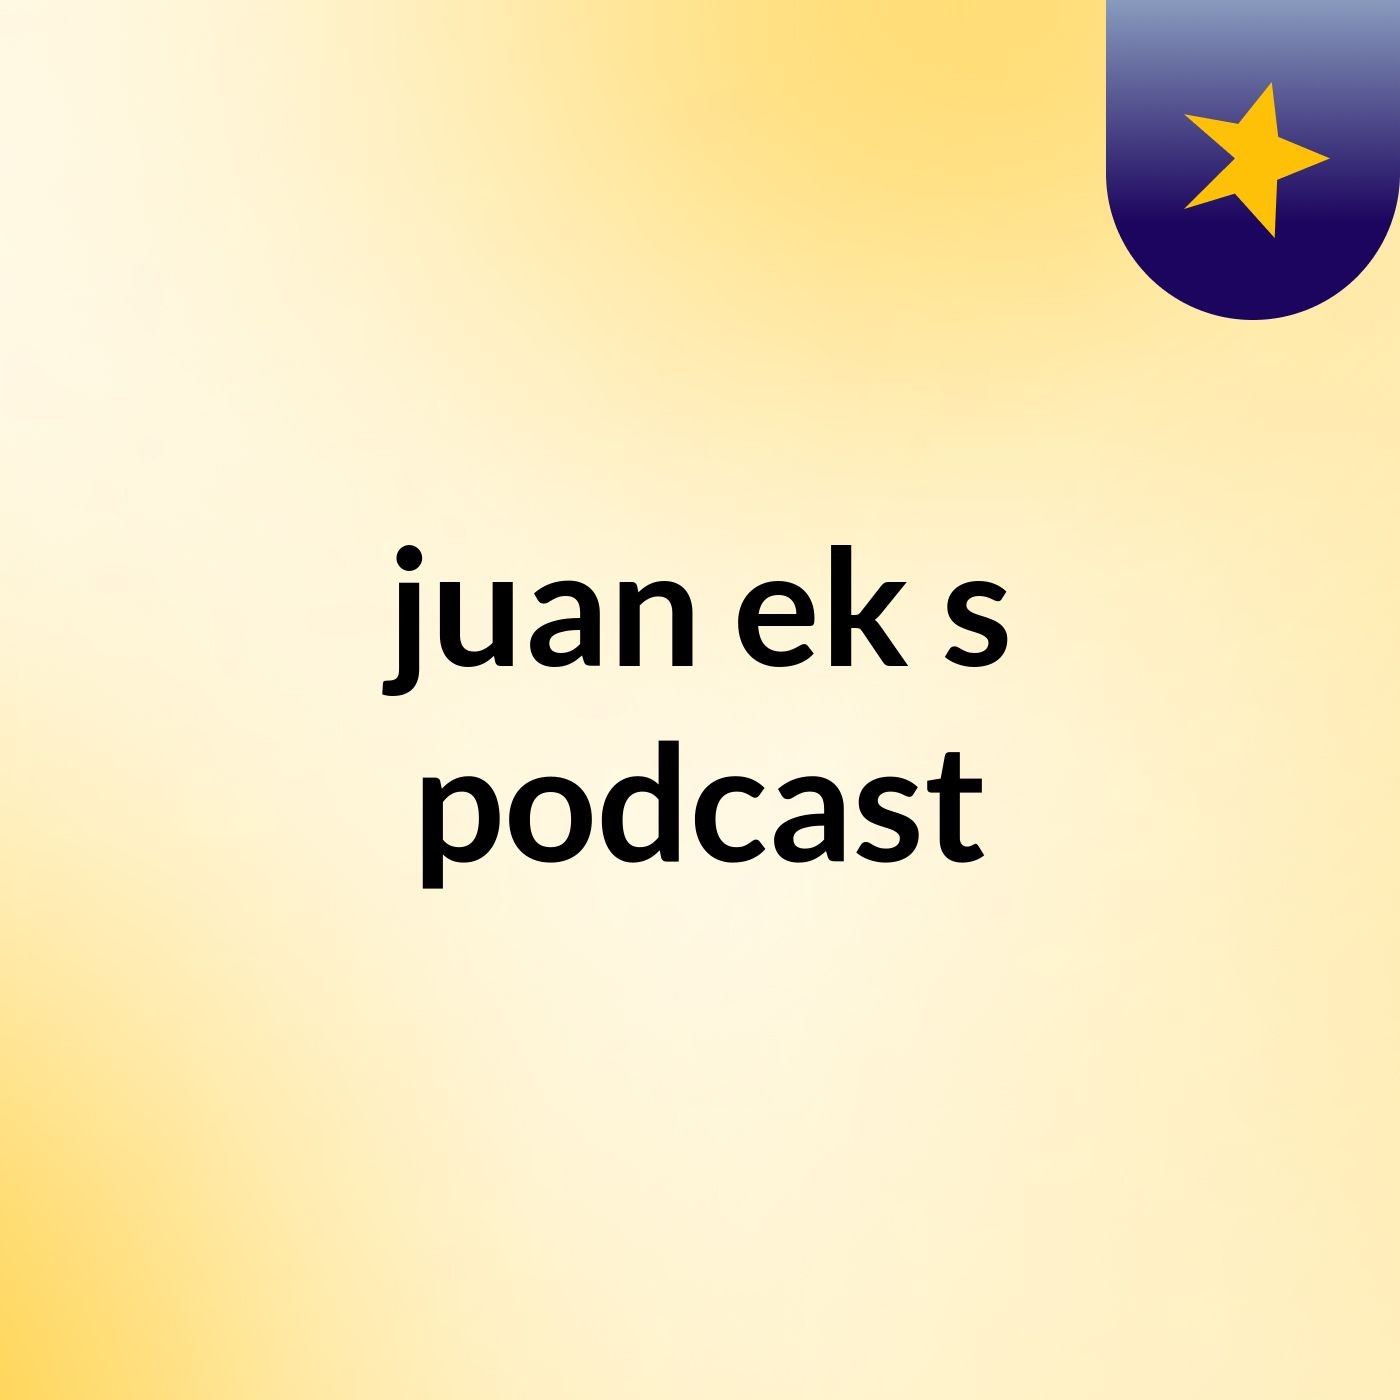 juan ek's podcast